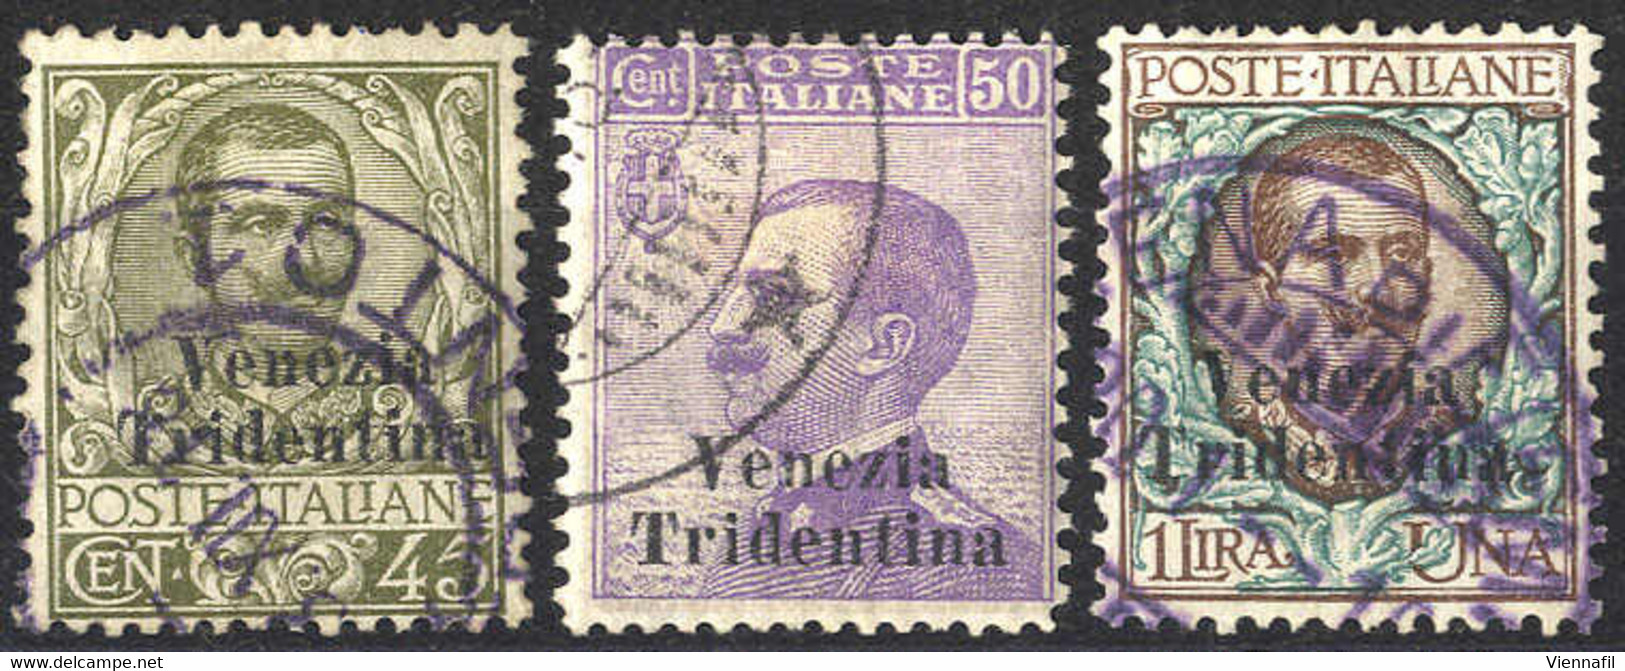 O 1918, Trentino, 45 Cent. + 50 Cent. + 1 Lira, 3 Val. Usati, Due Val. Firm. Em. Diena (S. 25-27 / 900,-) - Trento